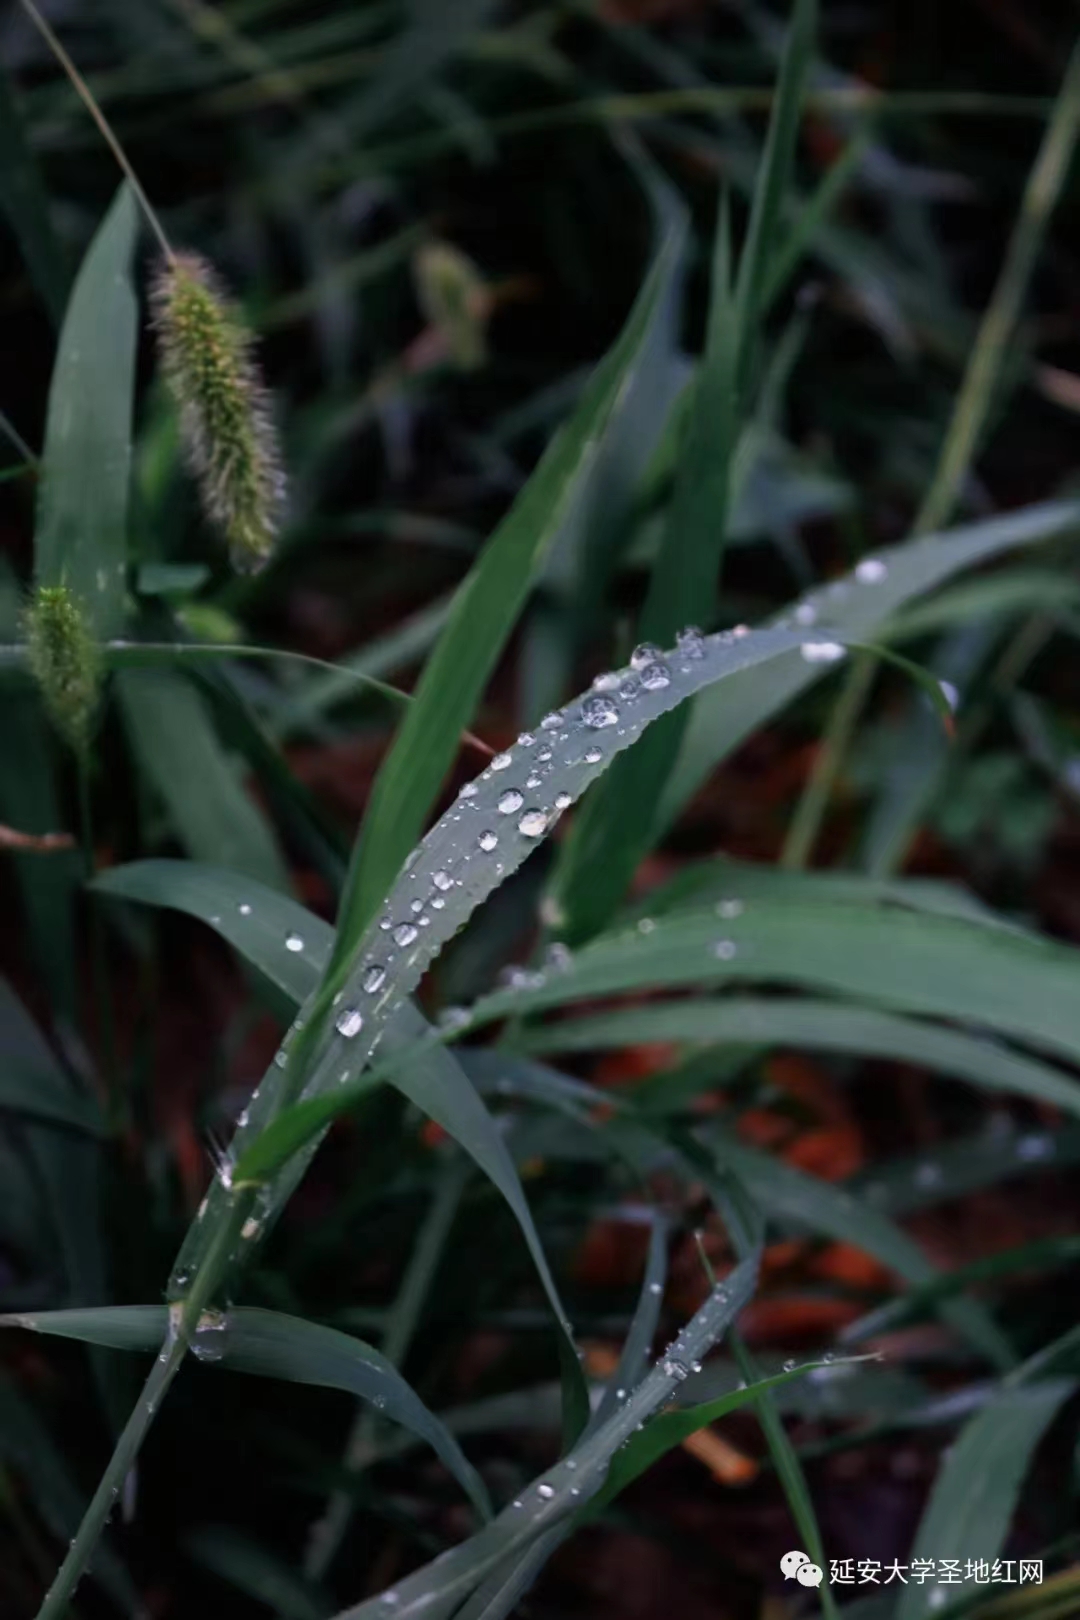 雨后草叶上的圆滚滚的水珠，如同一颗颗晶莹剔透的水晶球。